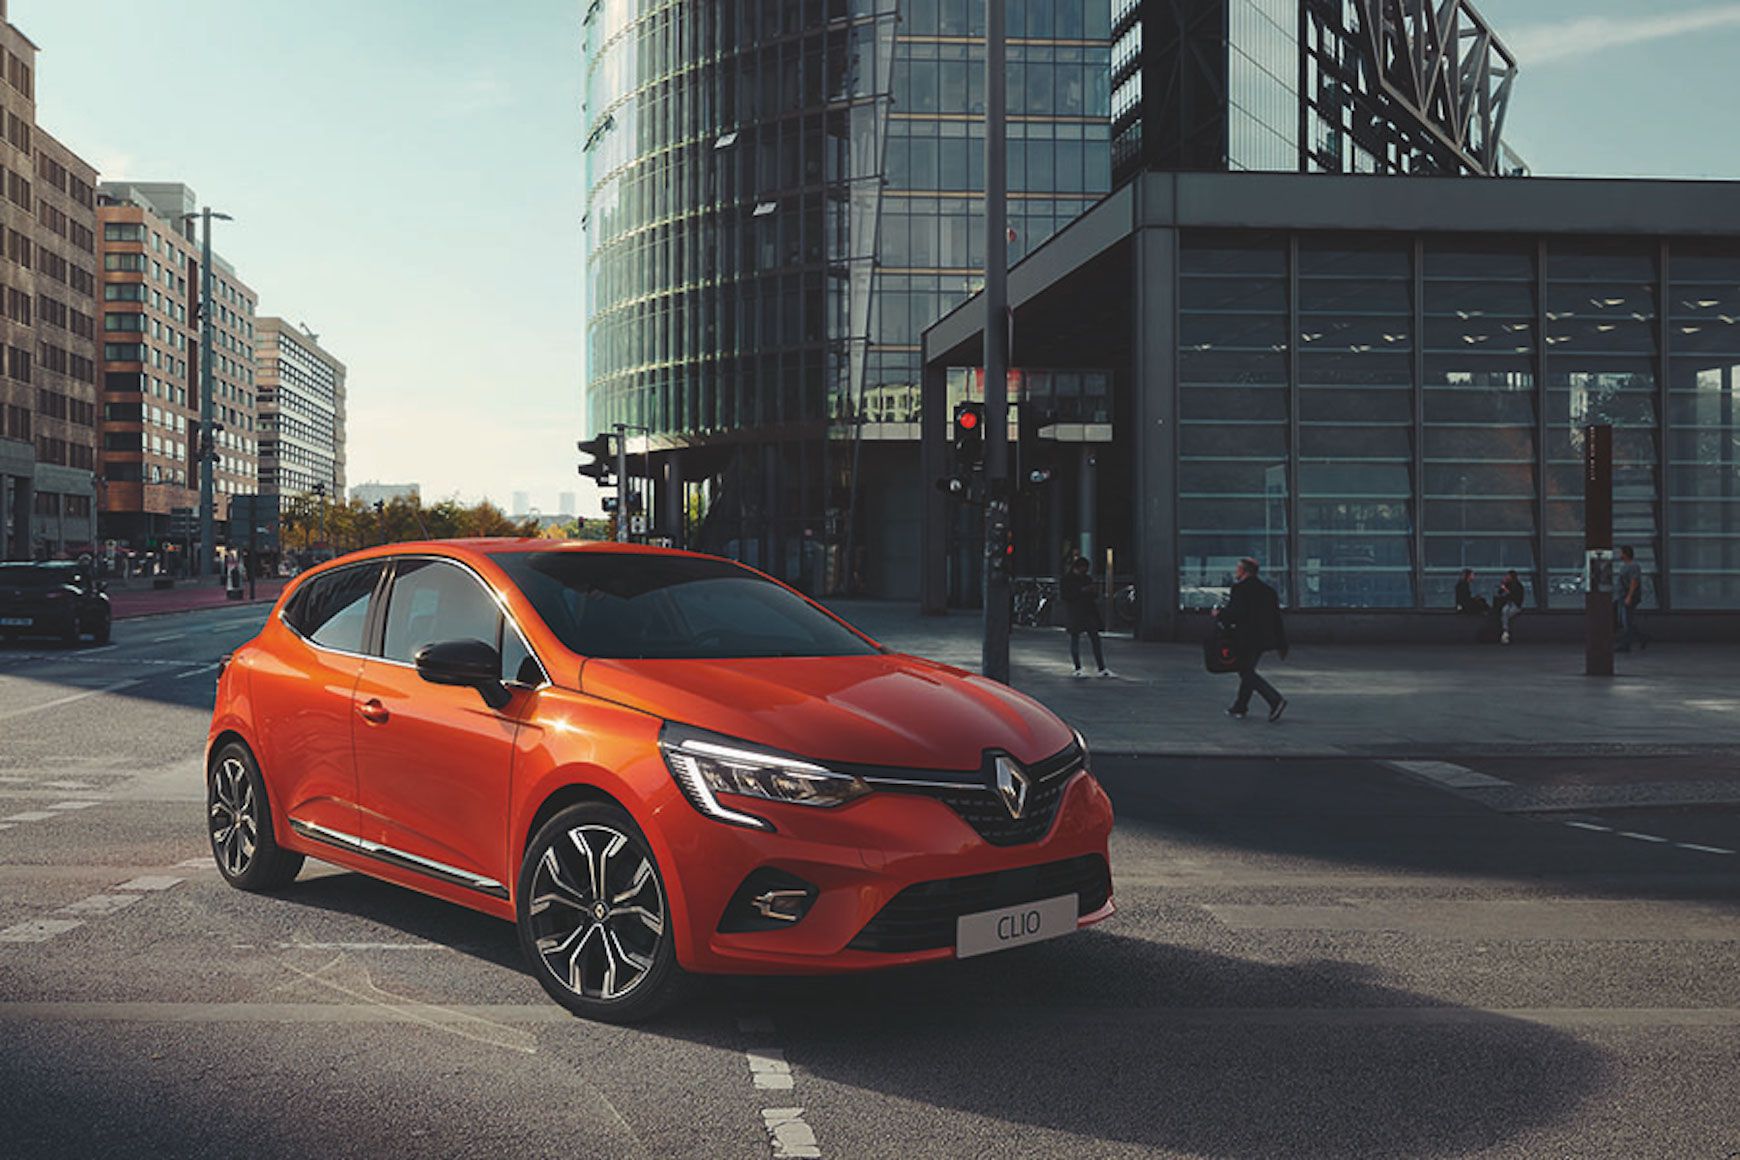 Renault CLIO 2019: Ikone einer neuen Generation - Renault Welt